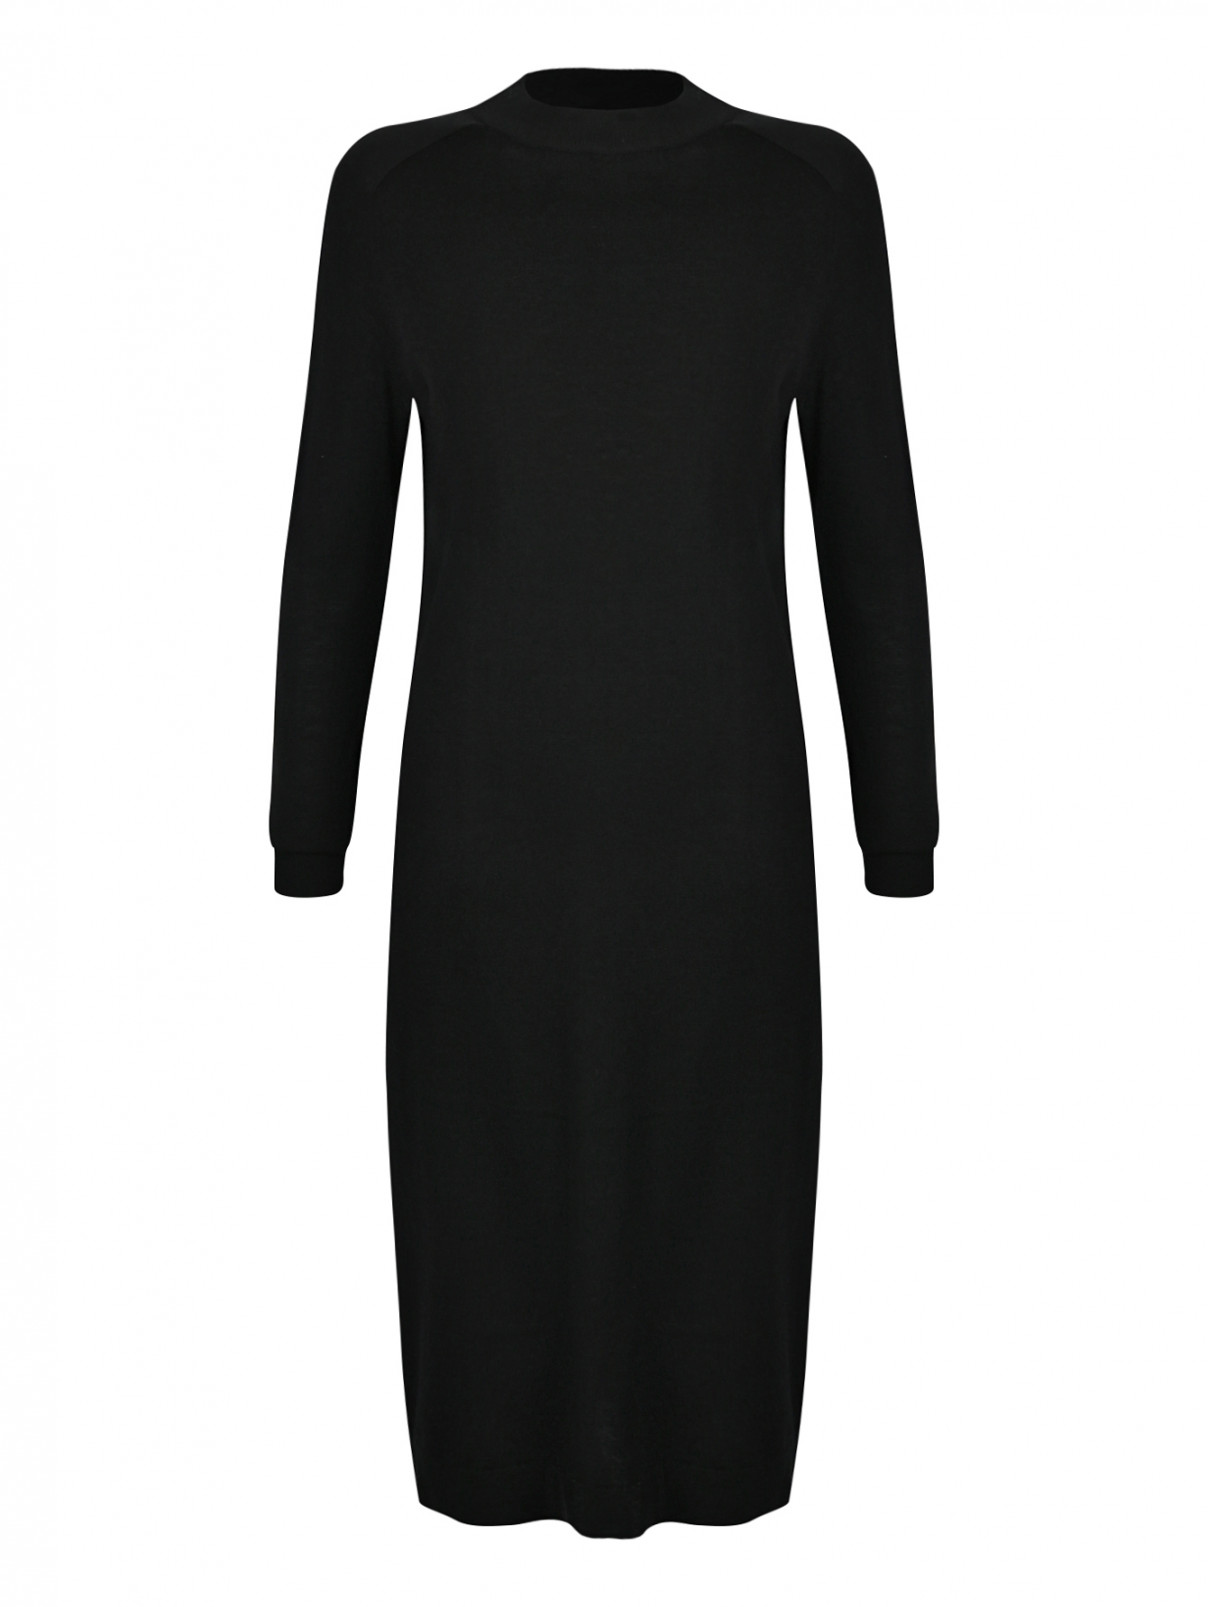 Платье из шелка и шерсти мелкой вязки Weekend Max Mara  –  Общий вид  – Цвет:  Черный